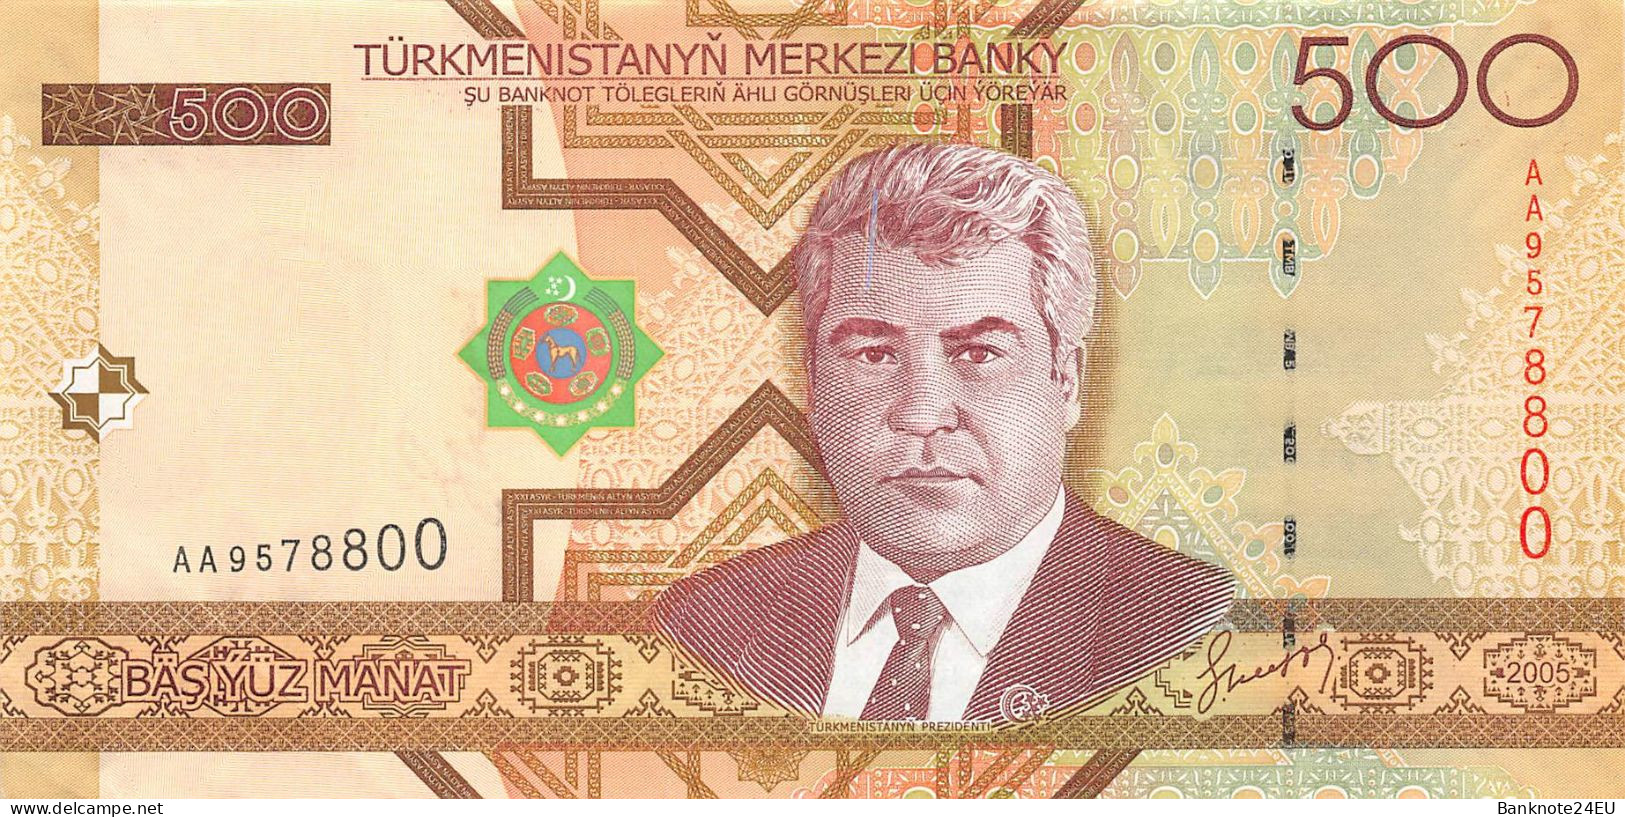 Turkmenistan 500 Manat 2005 Unc Pn 19 - Turkmenistan